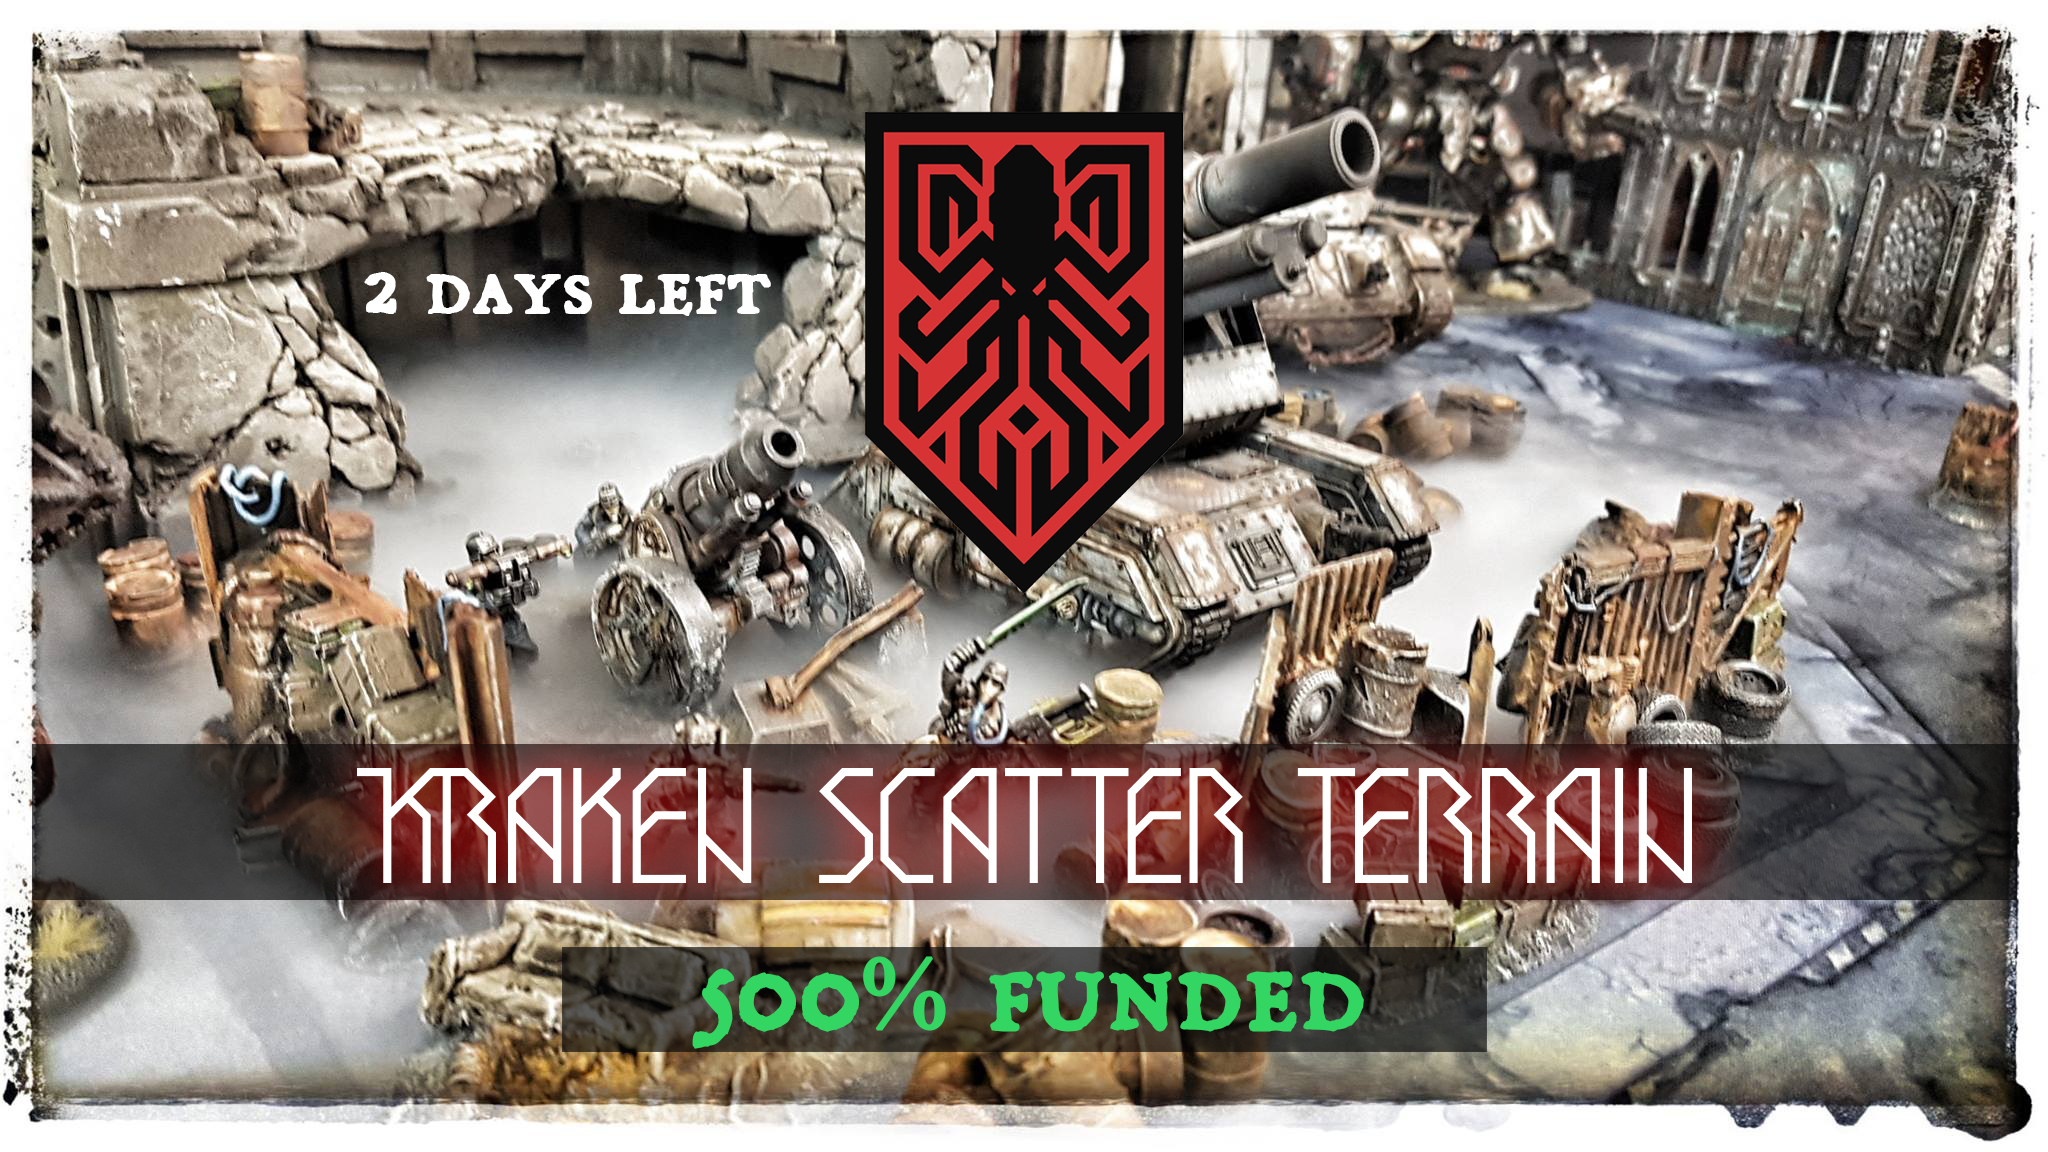 Last 46 hours Kraken scatter terrain Kickstarter